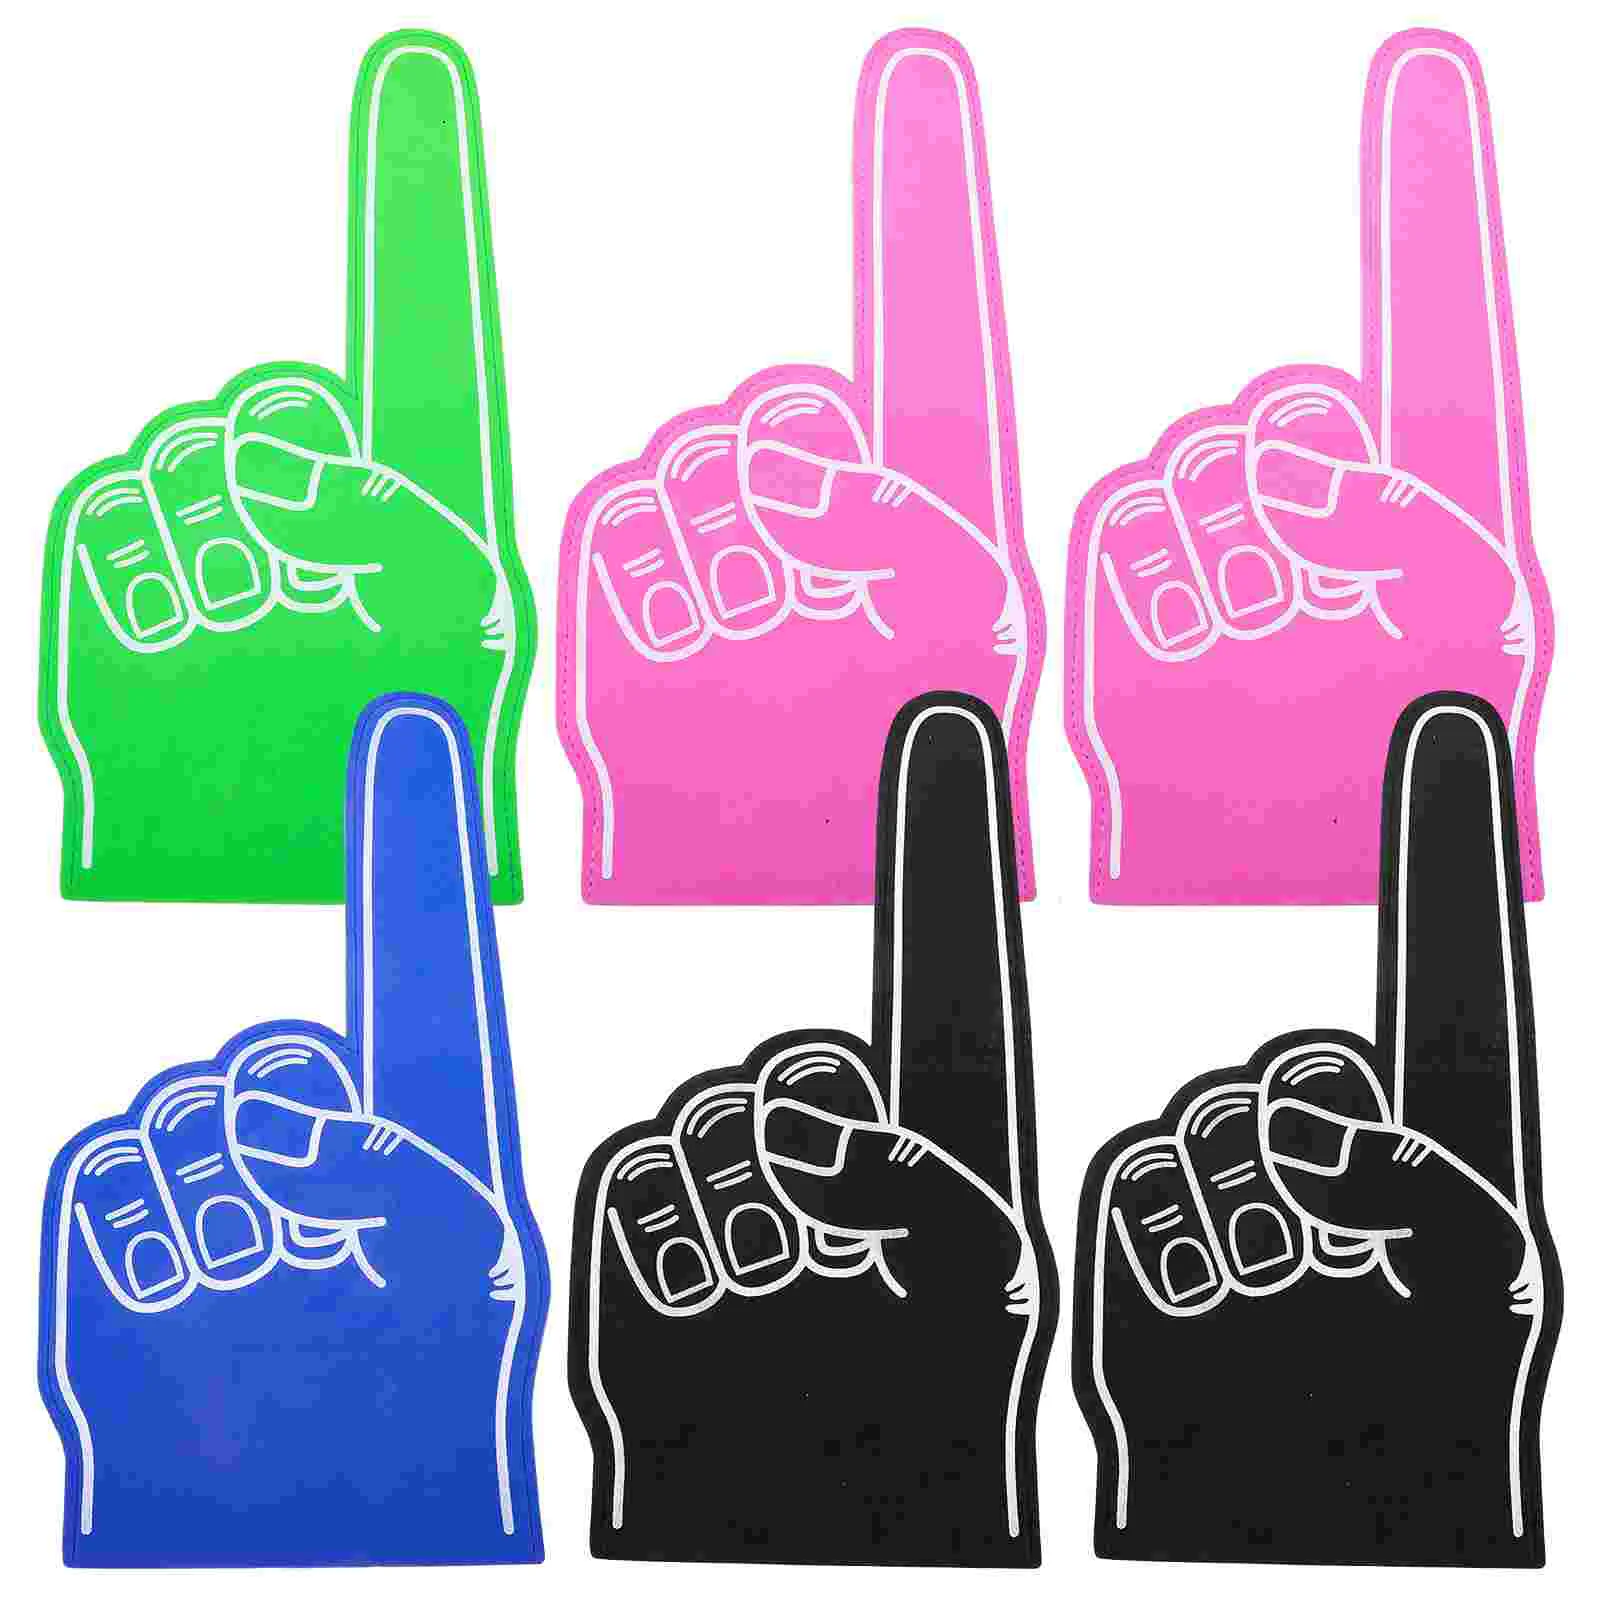 6шт пальцев для рук на все случаи жизни Помпон для черлидинга для спорта Захватывающие цвета Легкая атлетика Местные мероприятия Игры Изображение 1